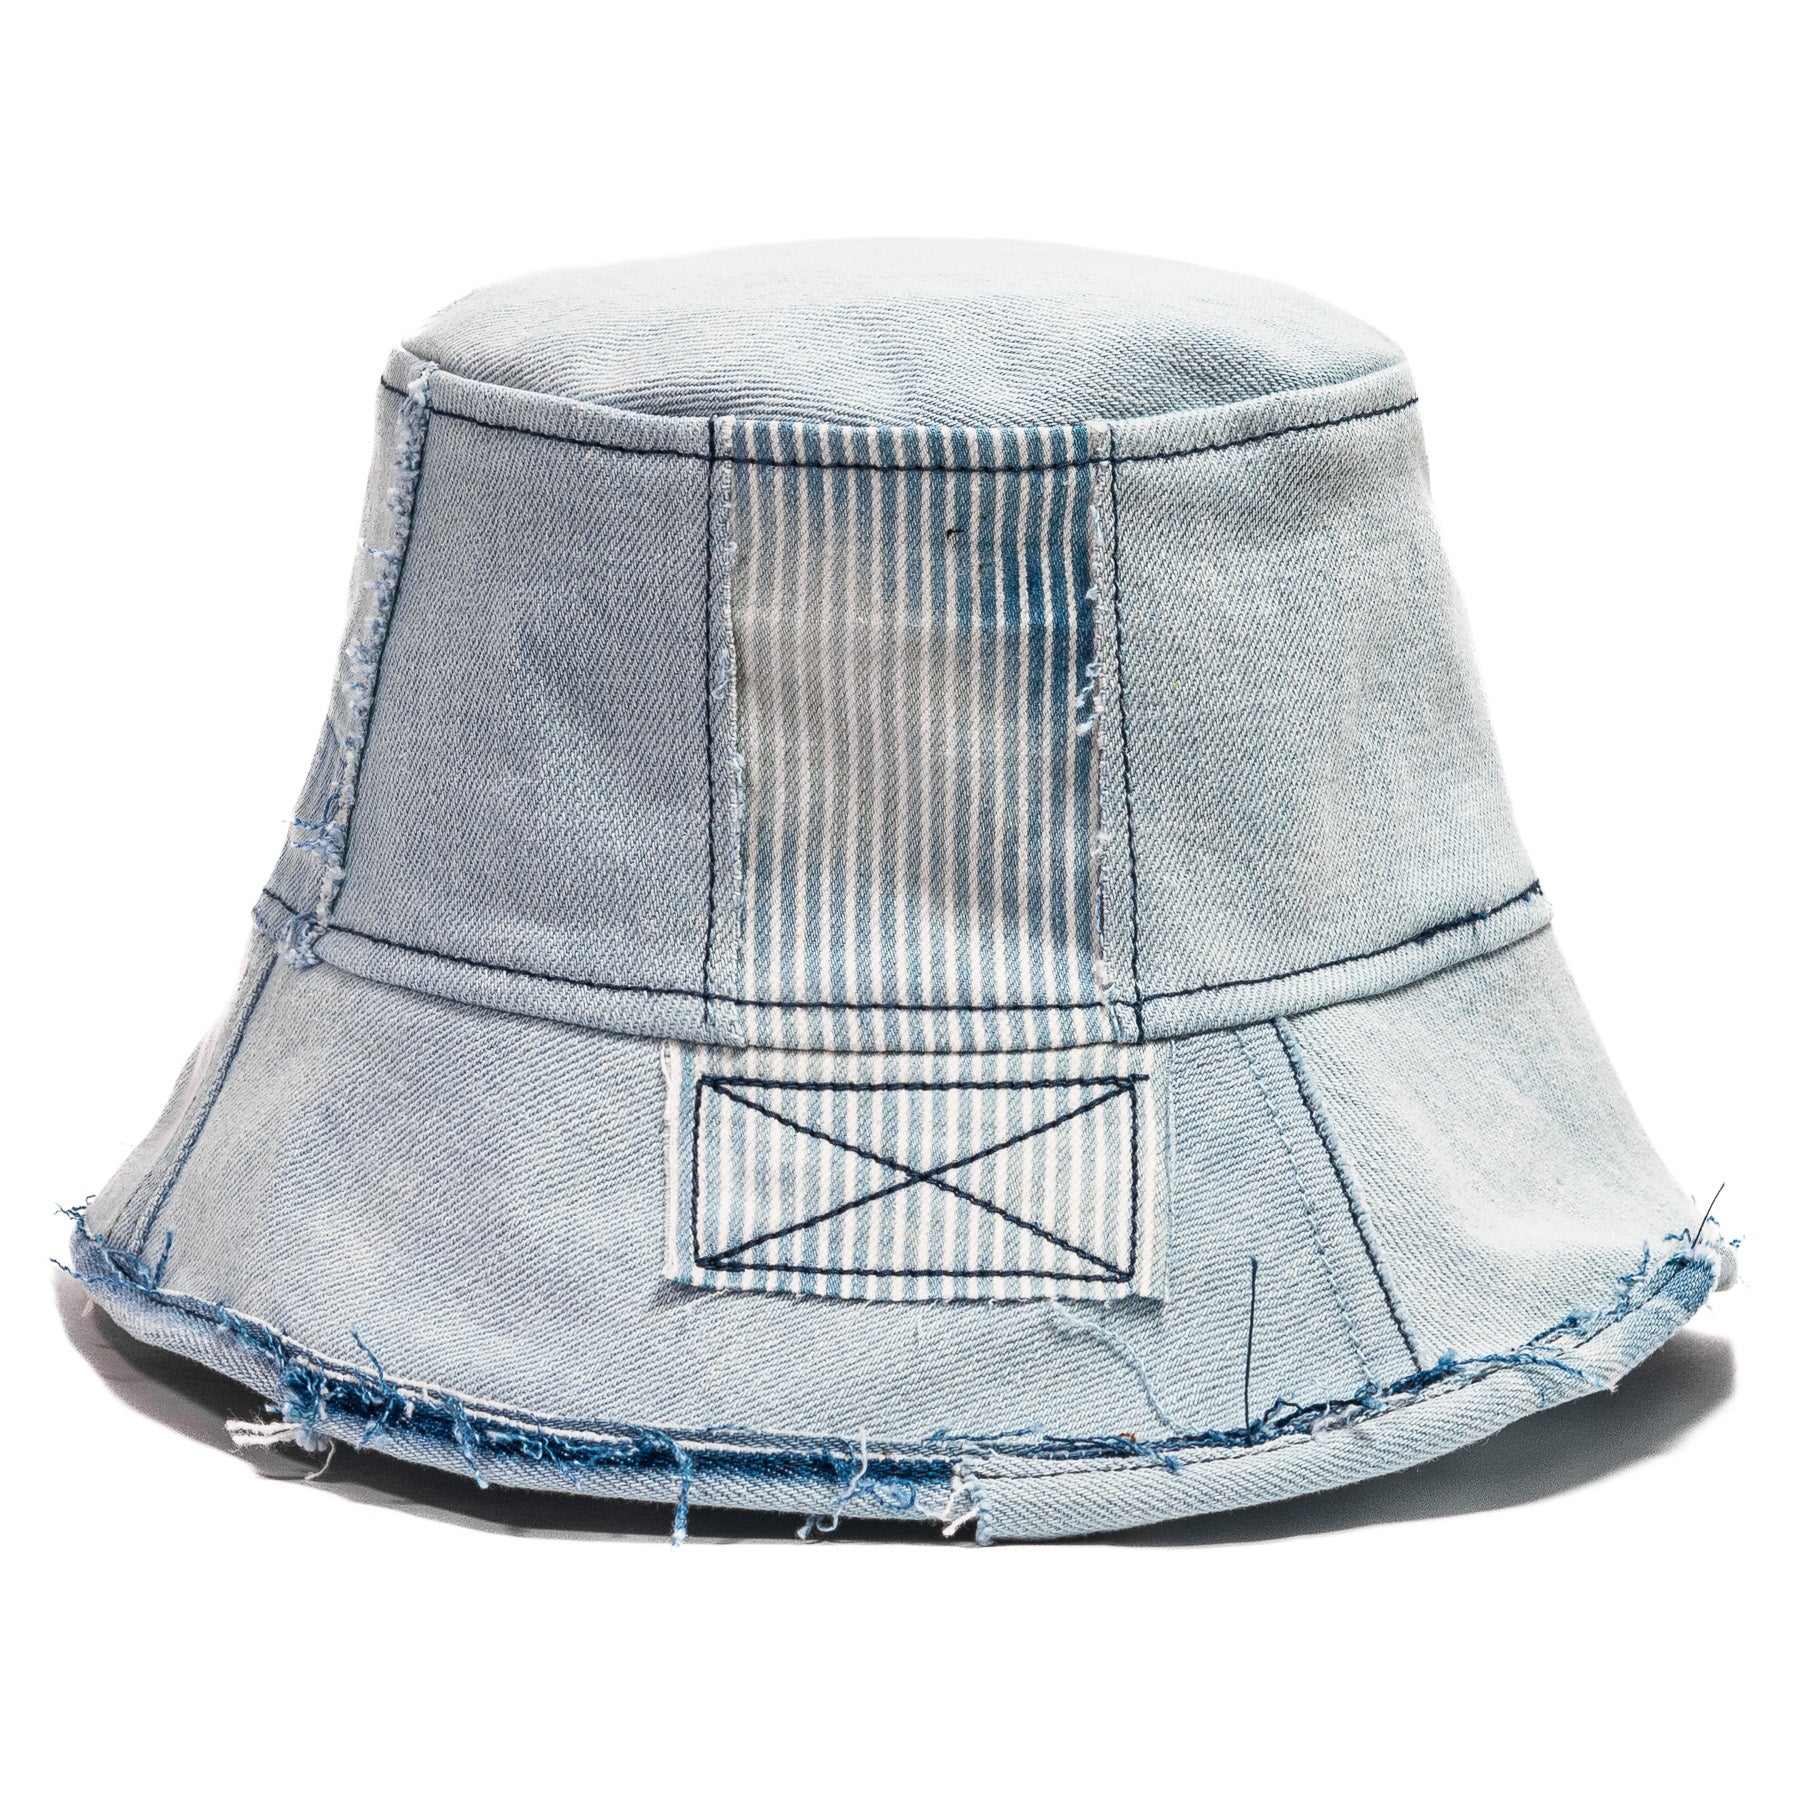 Mursaki Denim Chop Shop Bucket Hat - Light Blue